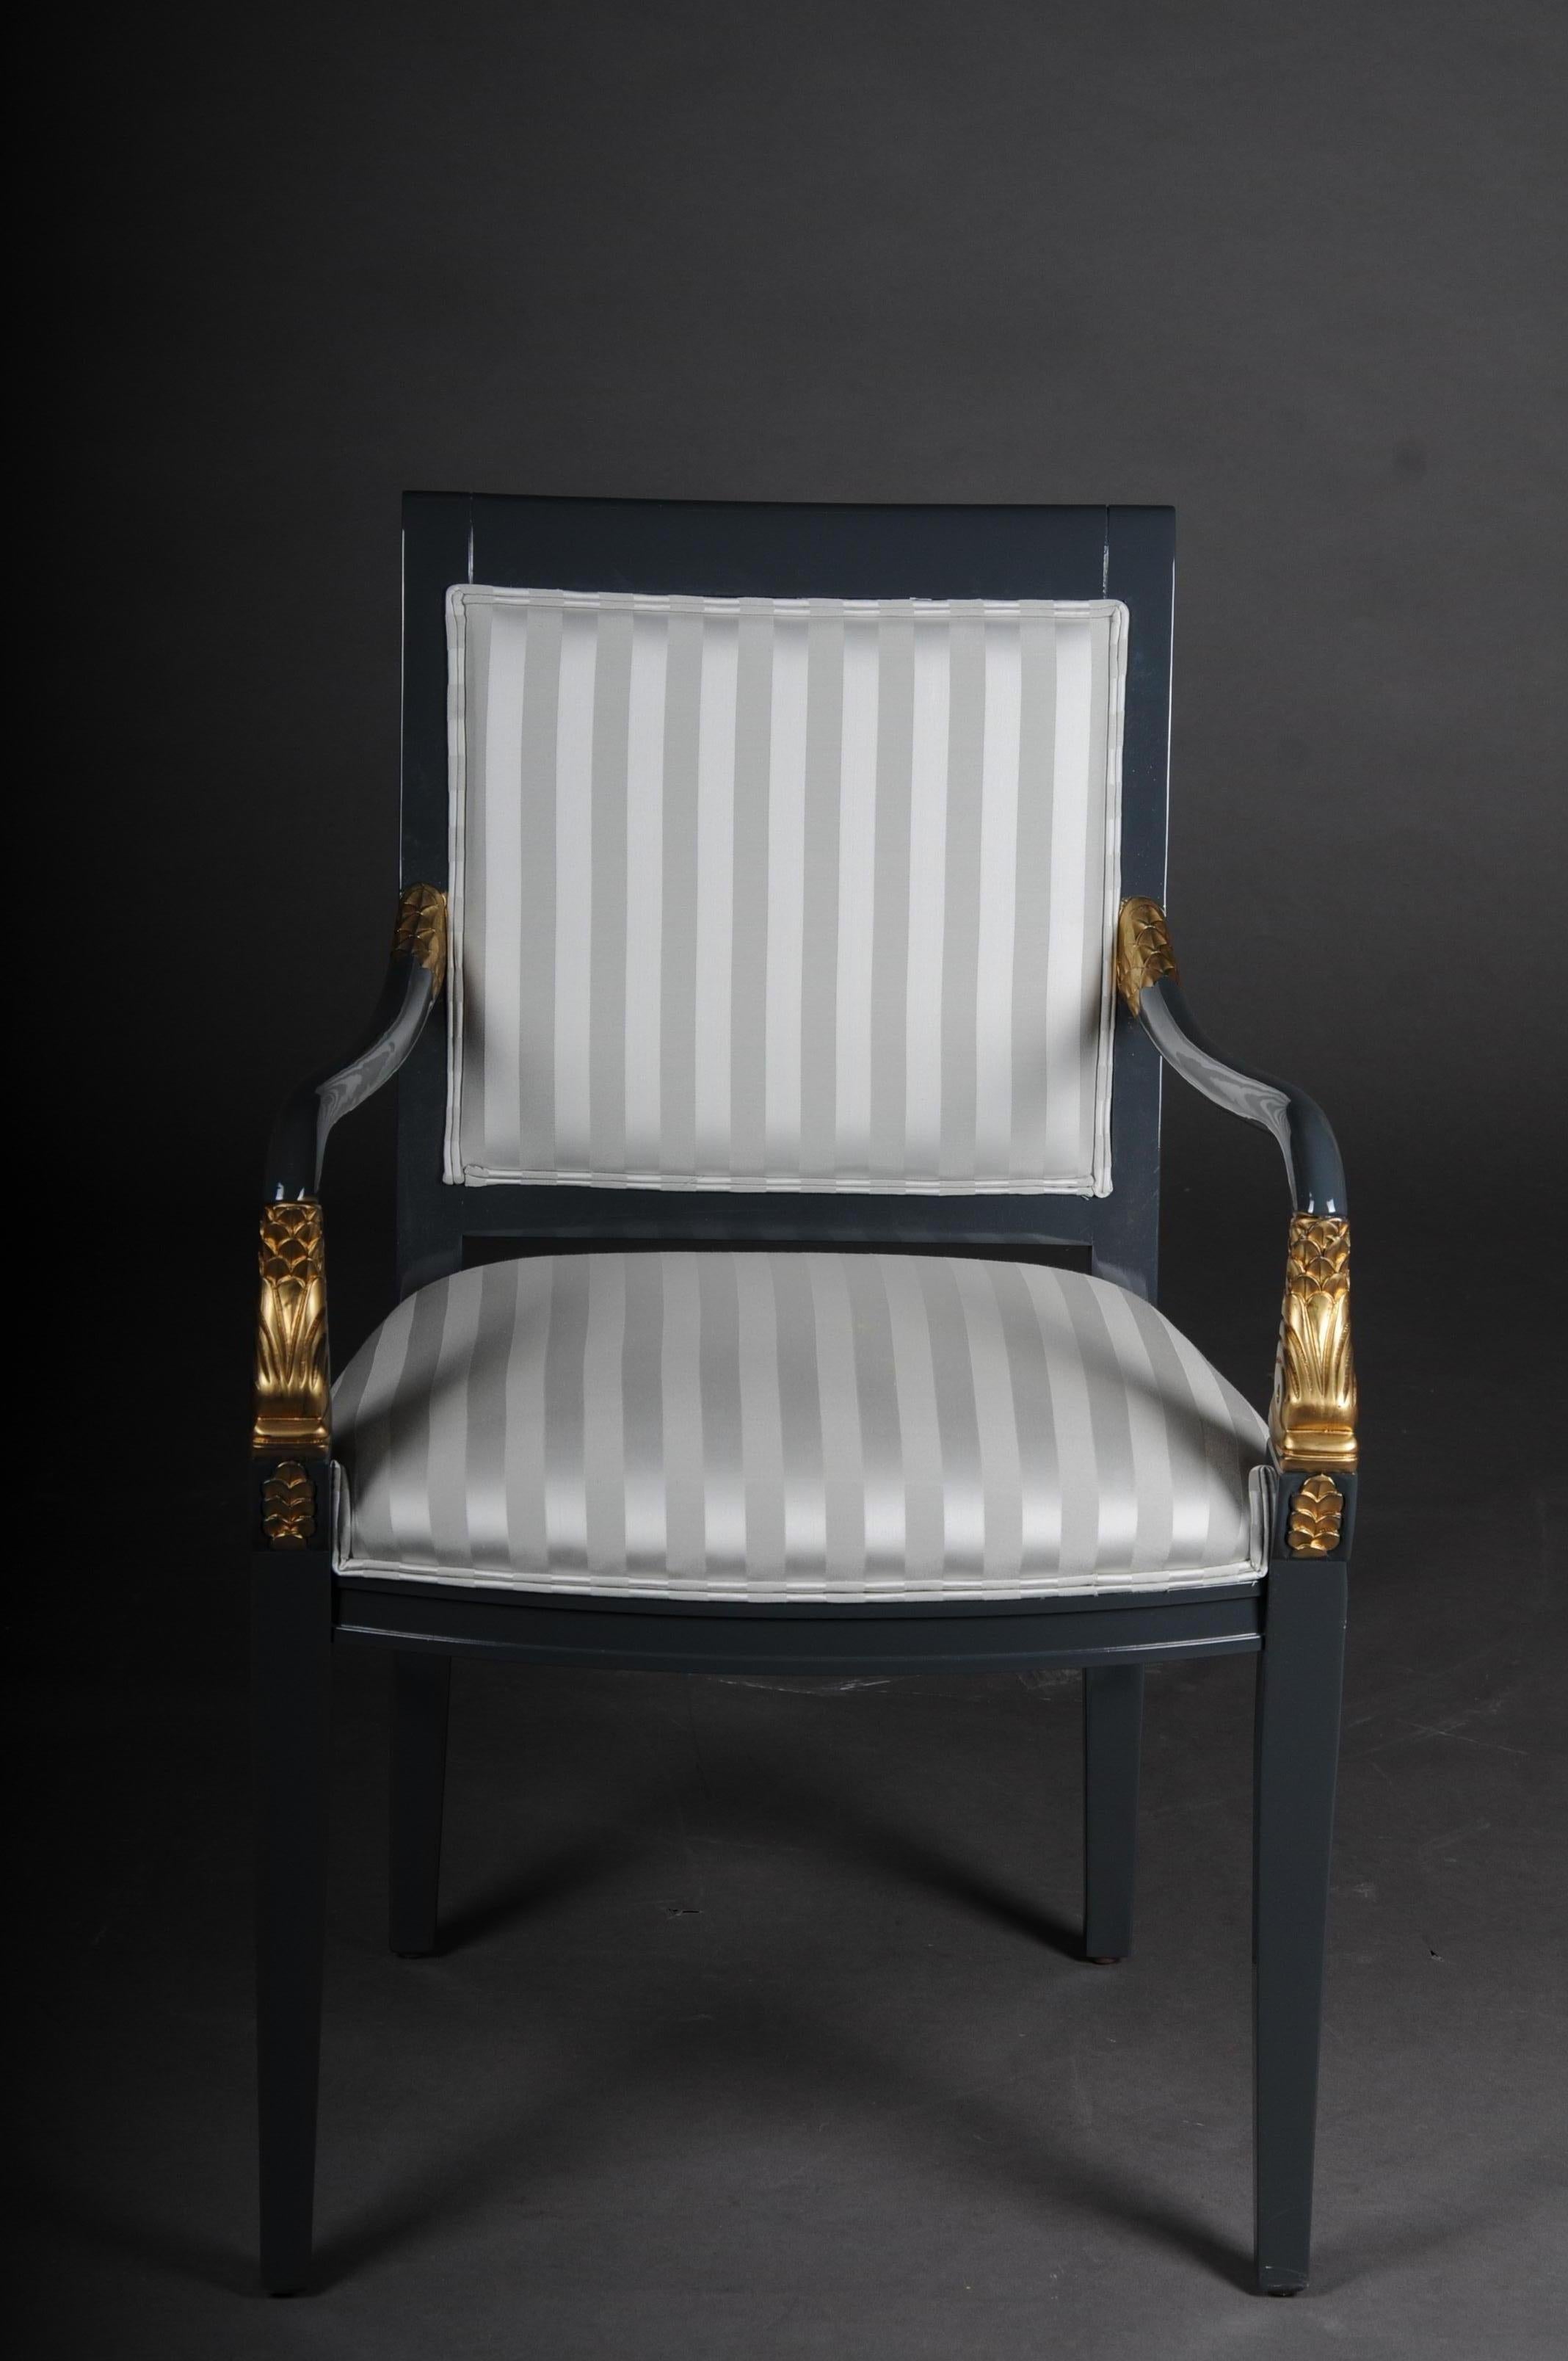 Ensemble de 4 fauteuils de designer italien de style Empire, 20ème siècle

Cadre en bois massif, peint en gris foncé, partiellement décoré d'or. Avec application dauphin. Fabrication de très haute qualité. Siège rembourré en tissu de haute